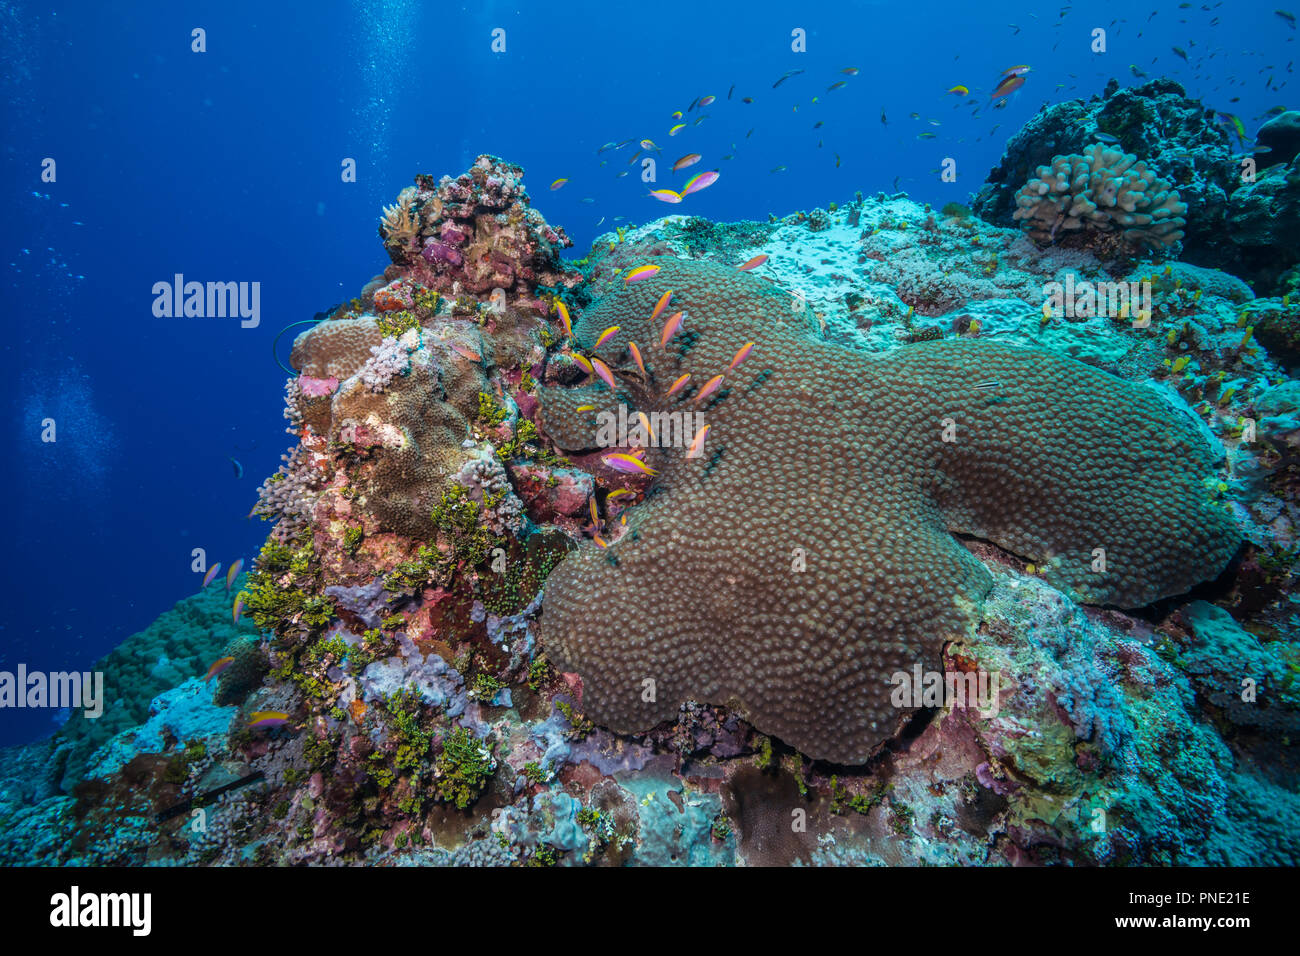 reef scene Stock Photo